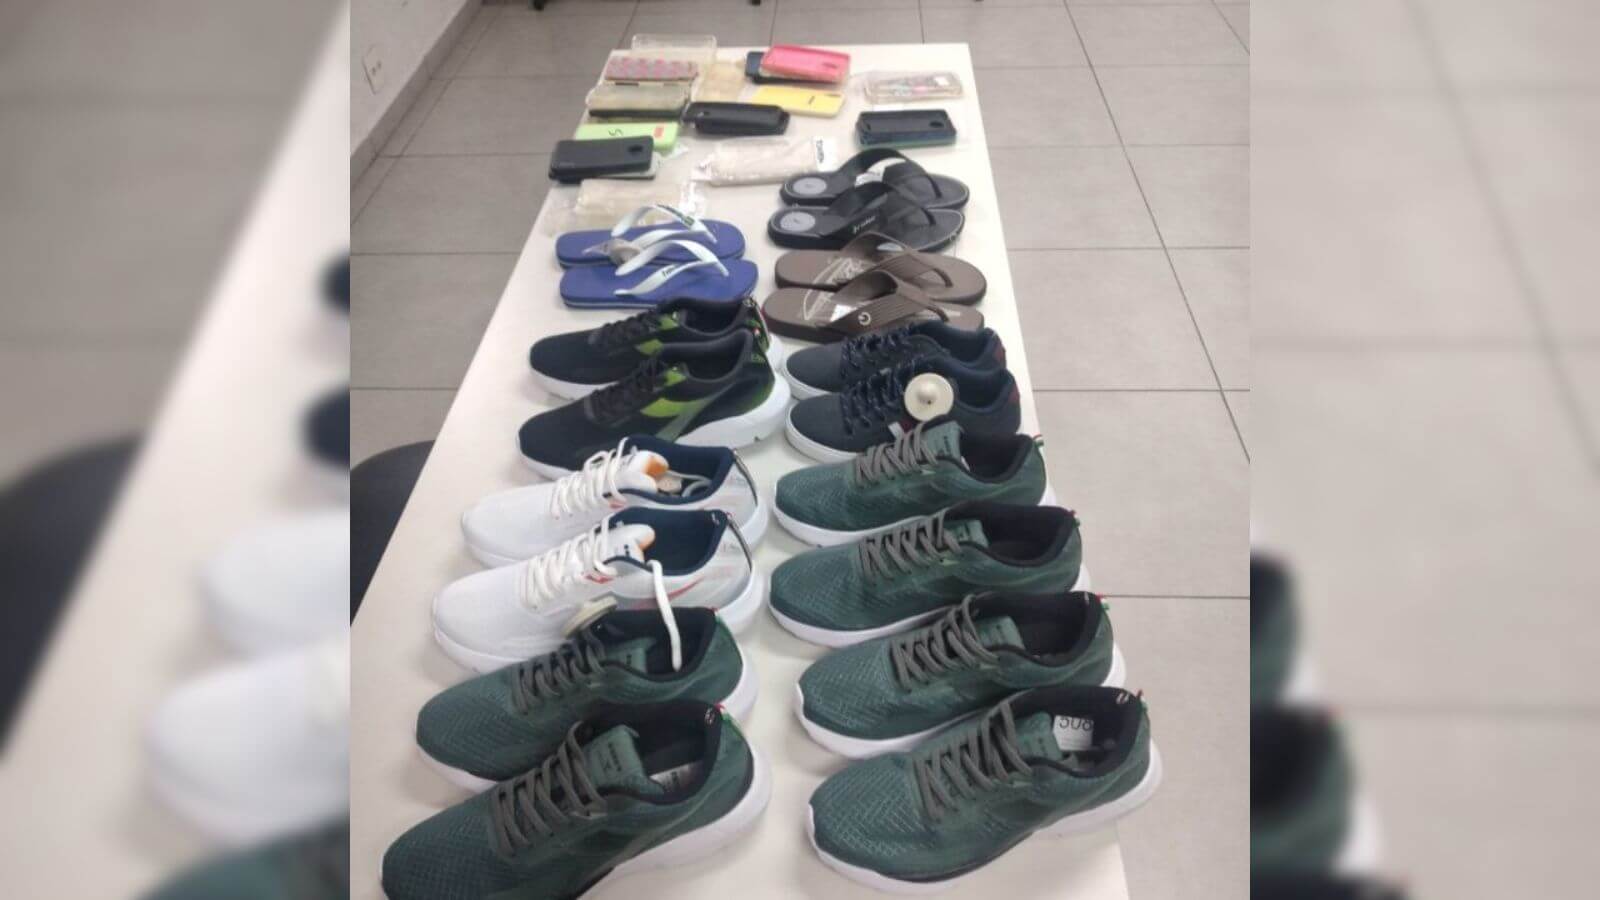 Guarda de Jundiaí prende homem por furto a loja de calçados no Centro